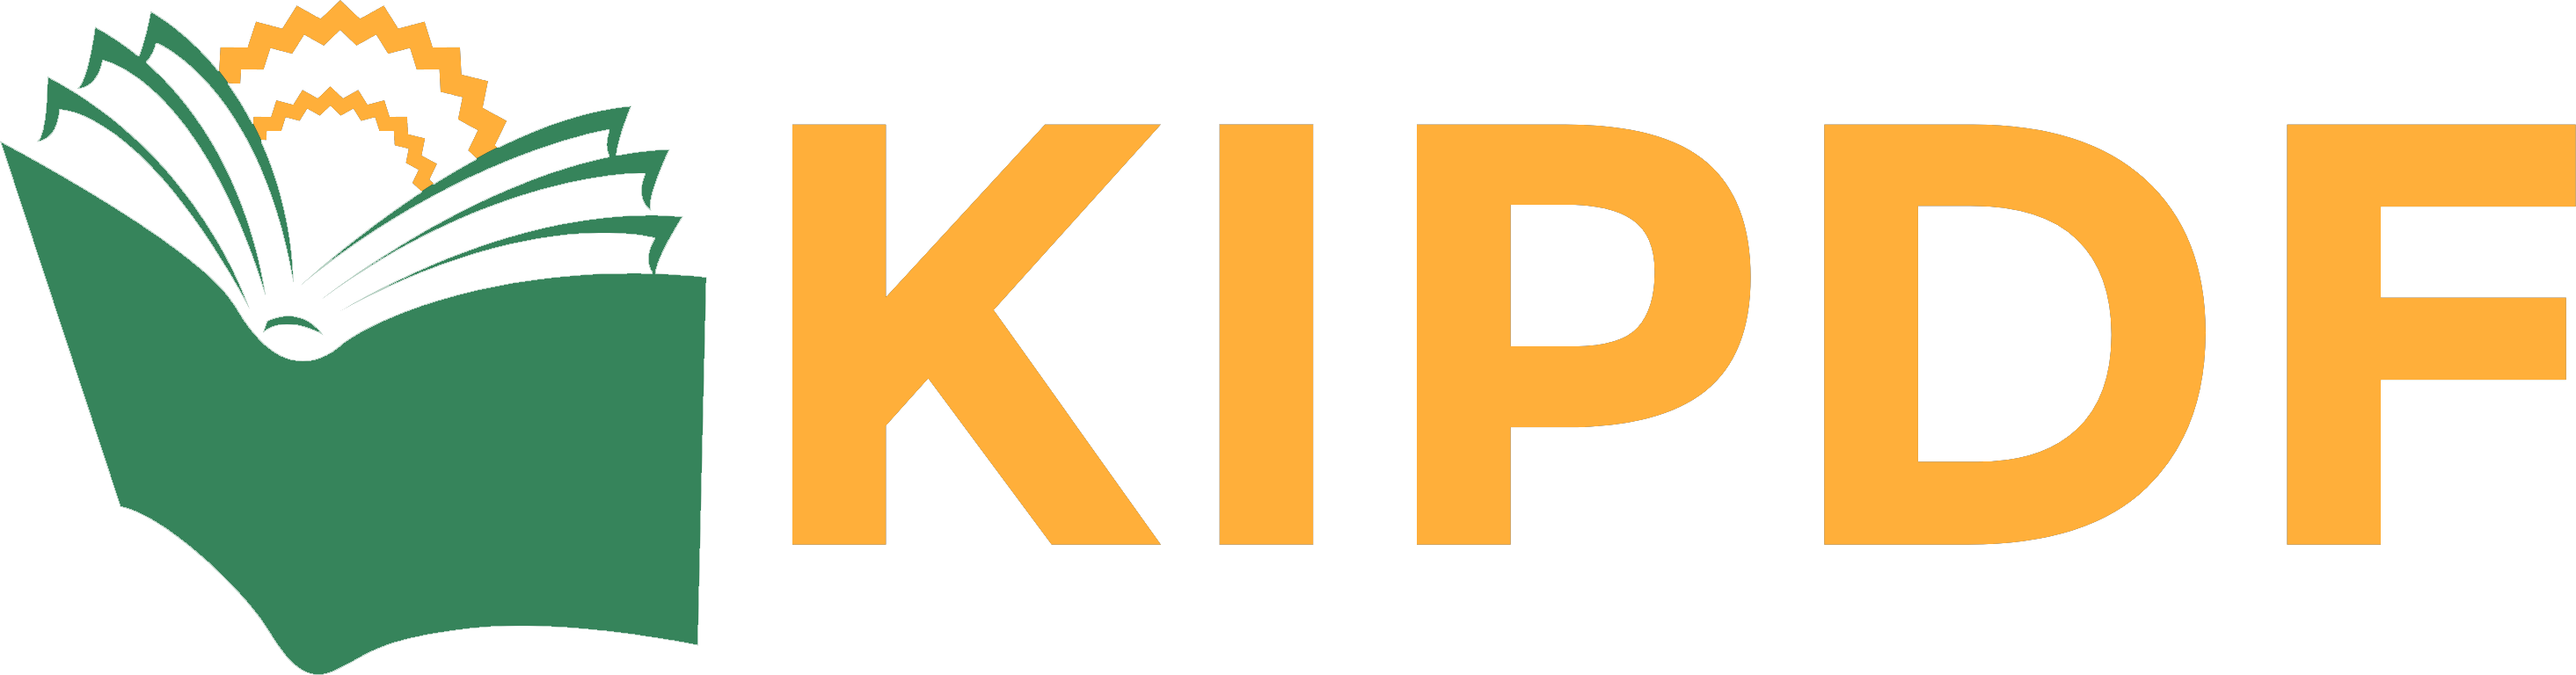 kipdf logo